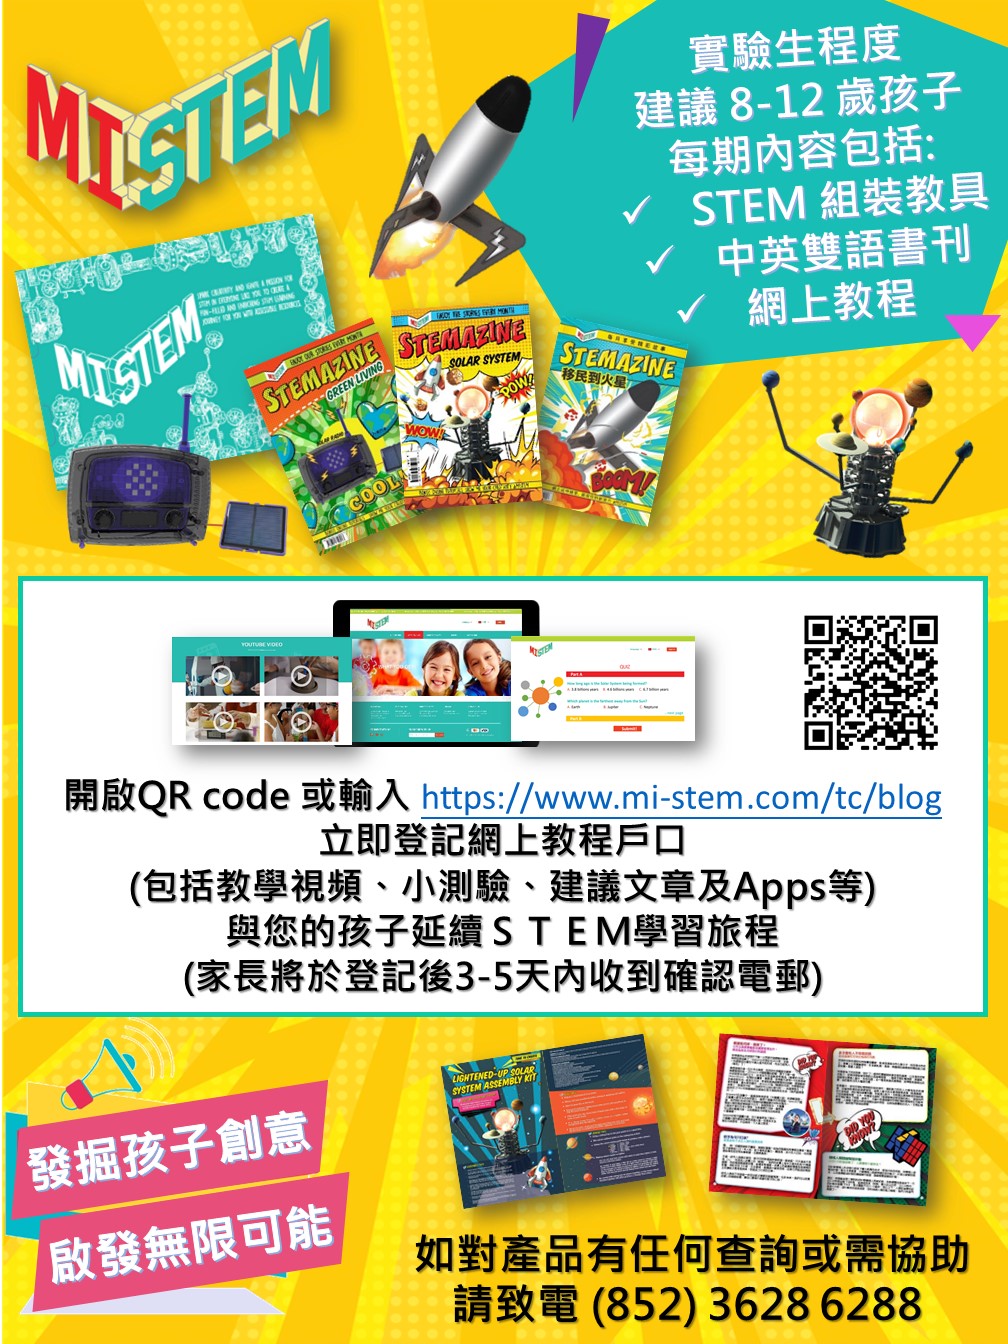 MI STEM - Registration of online resources platform (Dr. Max 客戶專用) Image